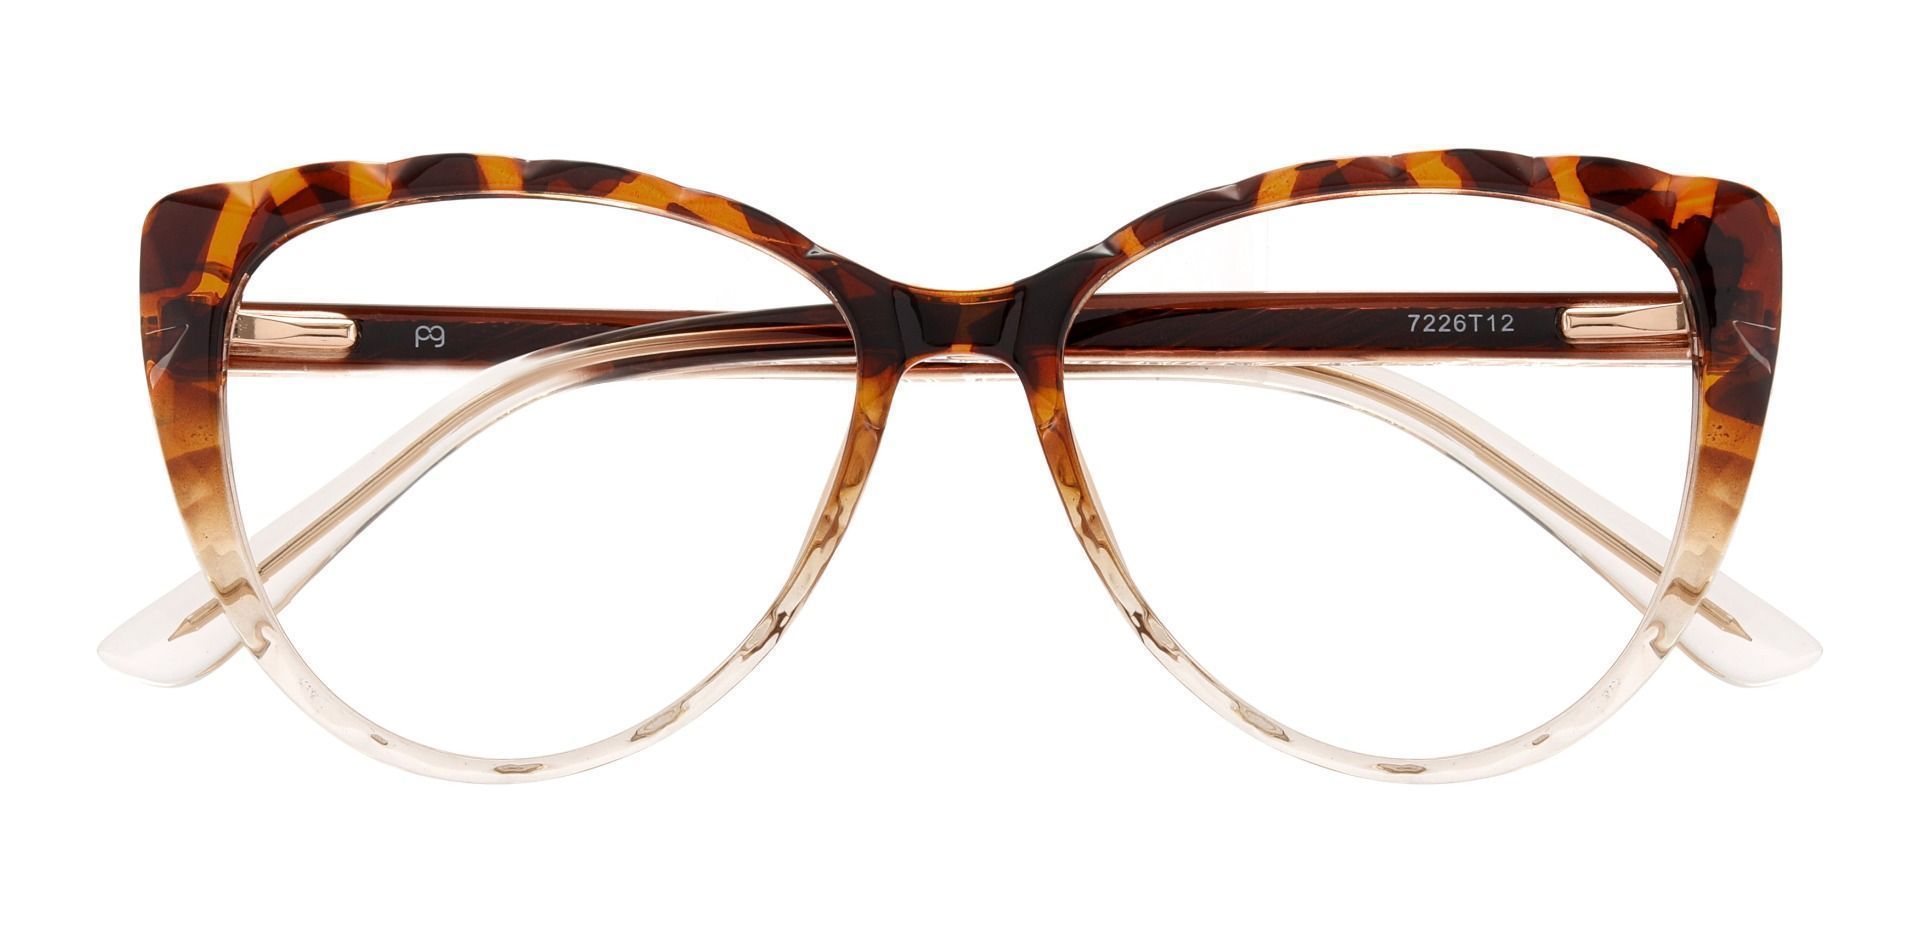 Fontaine Cat Eye Prescription Glasses - Tortoise